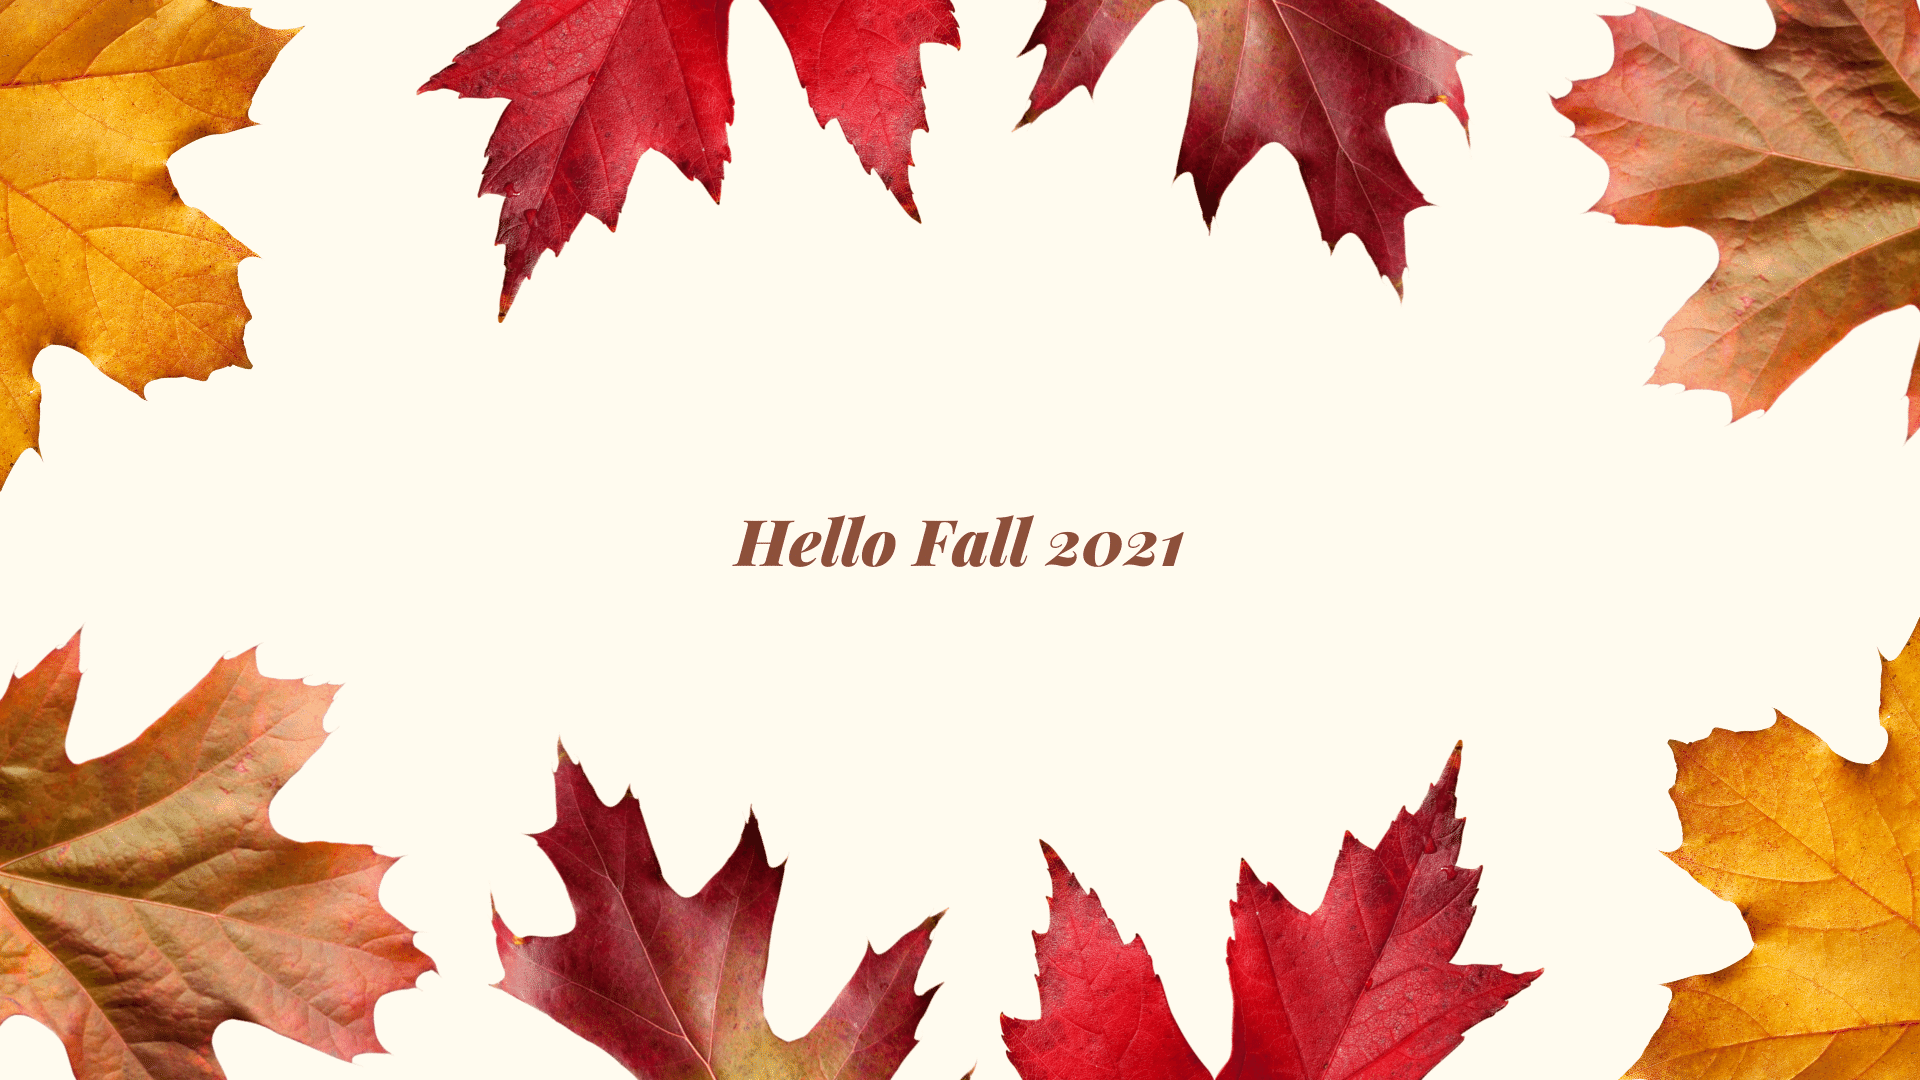 Best Fall 2021 Wallpaper HD free download for desktop